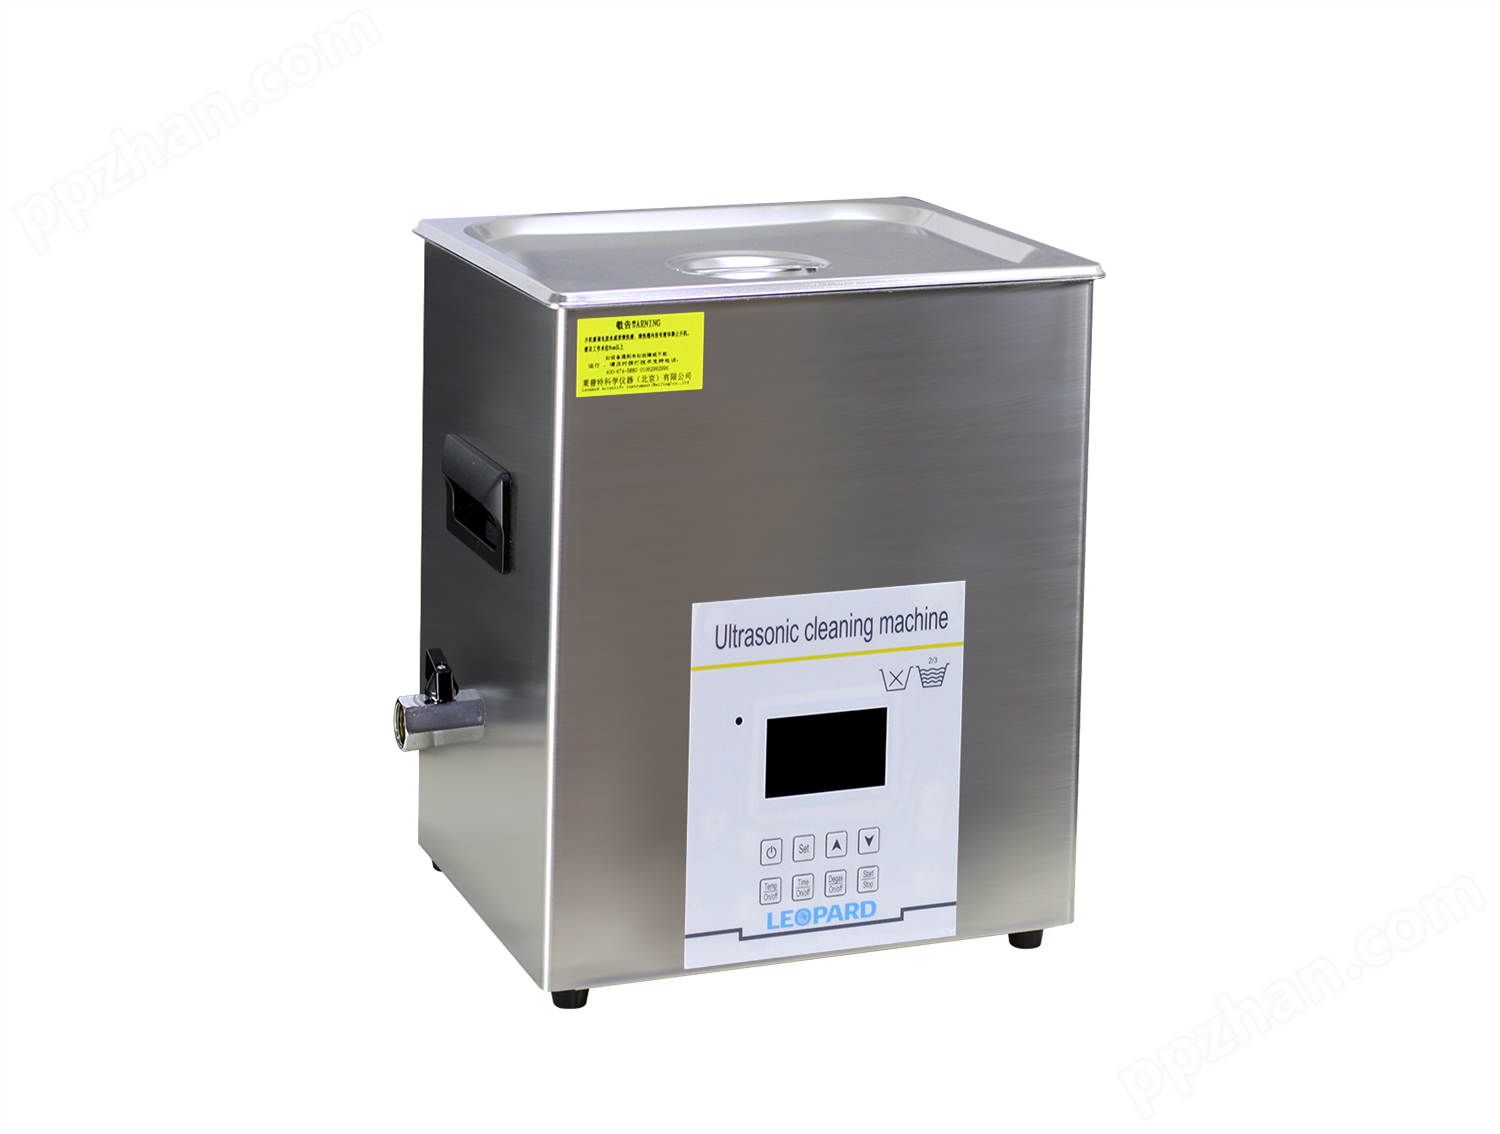 CS2200DE超声波清洗器 超声波清洗机